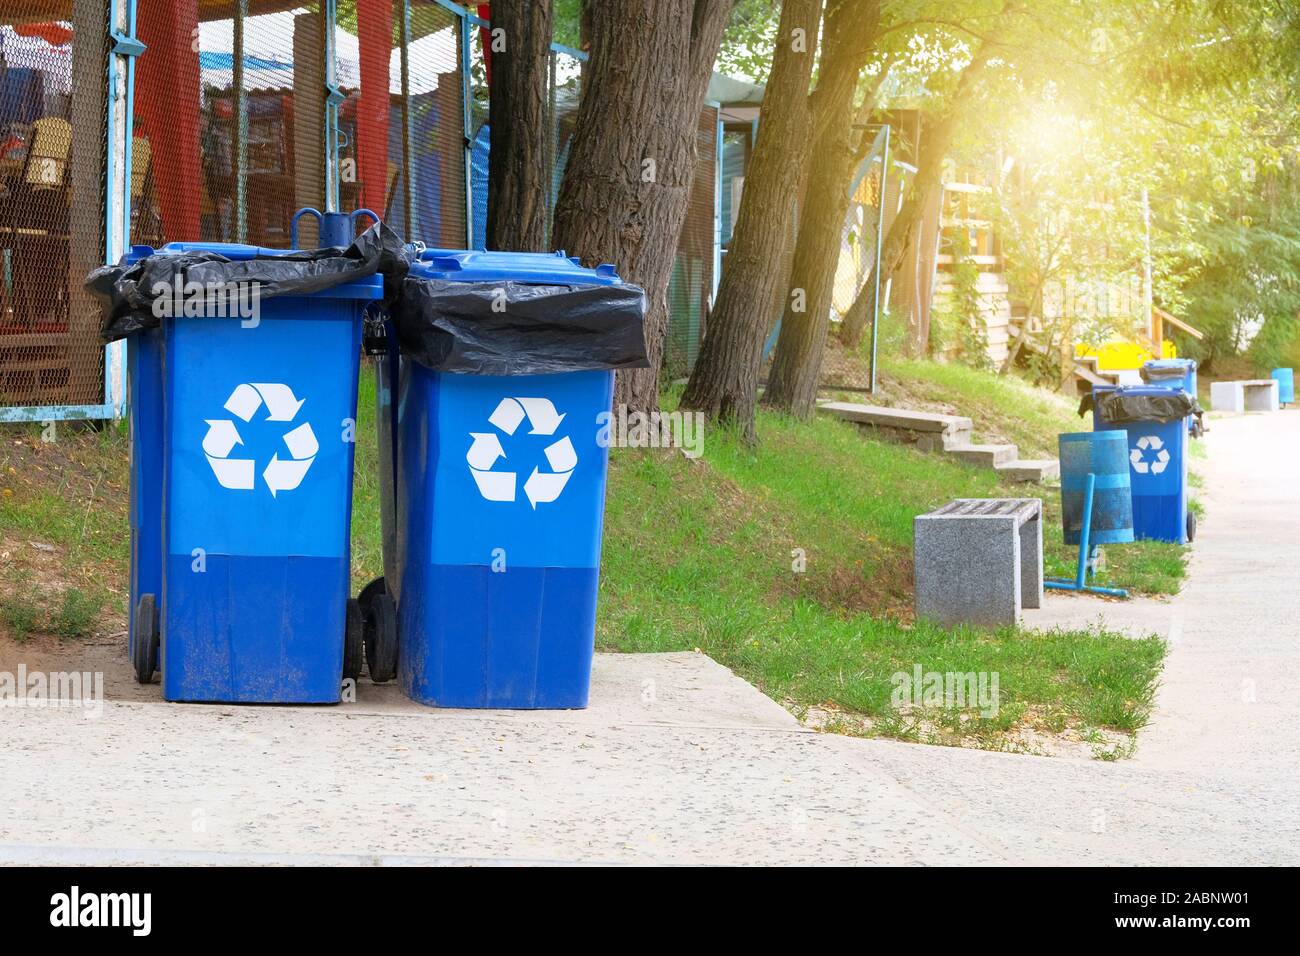 Garbage Collection. Den blauen Container für die weitere Verarbeitung von Müll. Recycling von Abfällen Konzept. Sonnenschein. Stockfoto